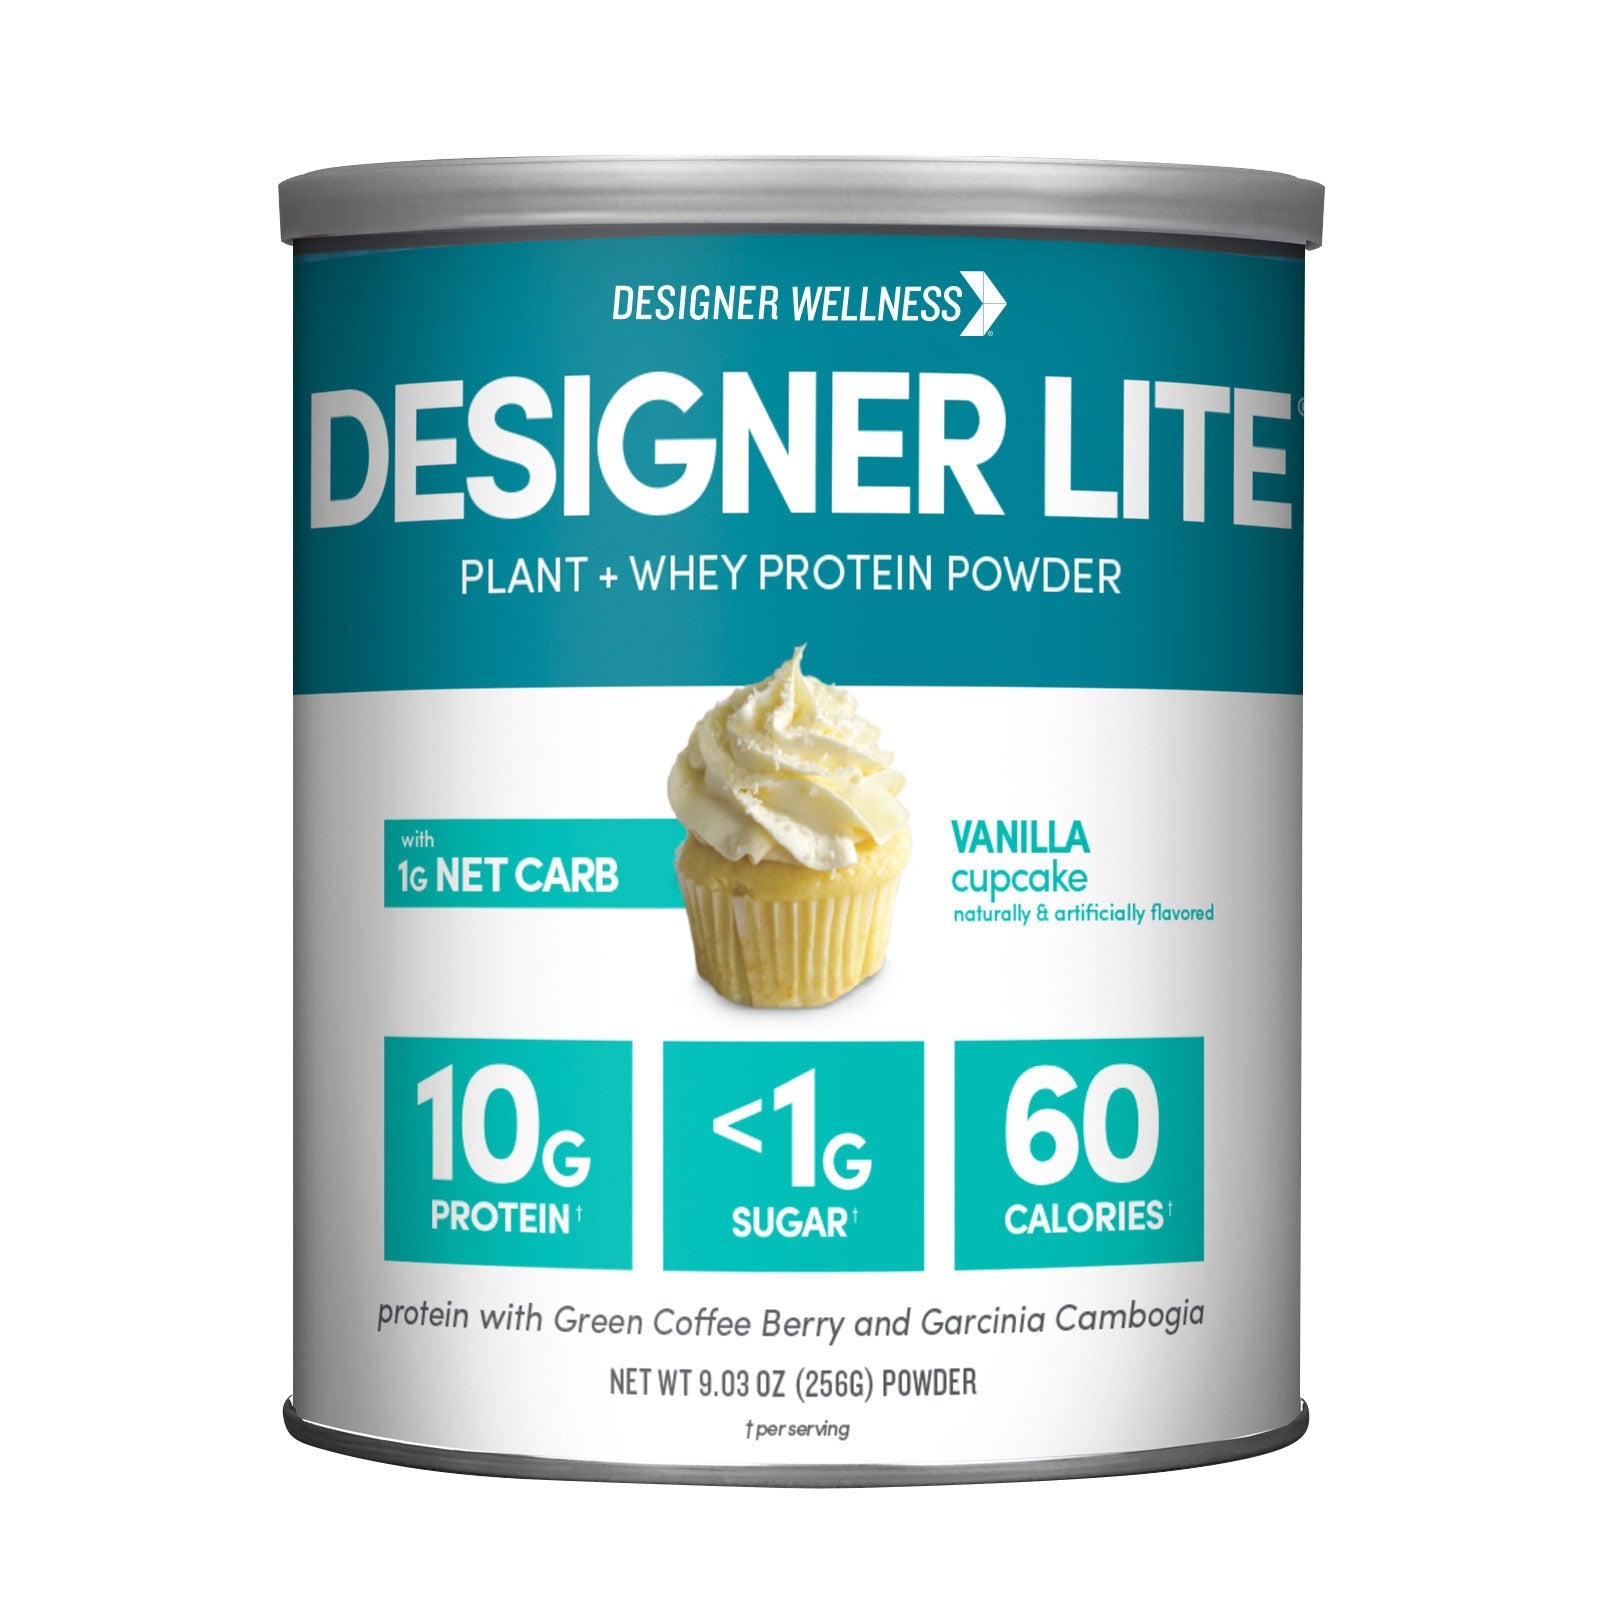 Designer Lite: Low Calorie Protein Powder - Designer Wellness (8260473285) (8294425952482)